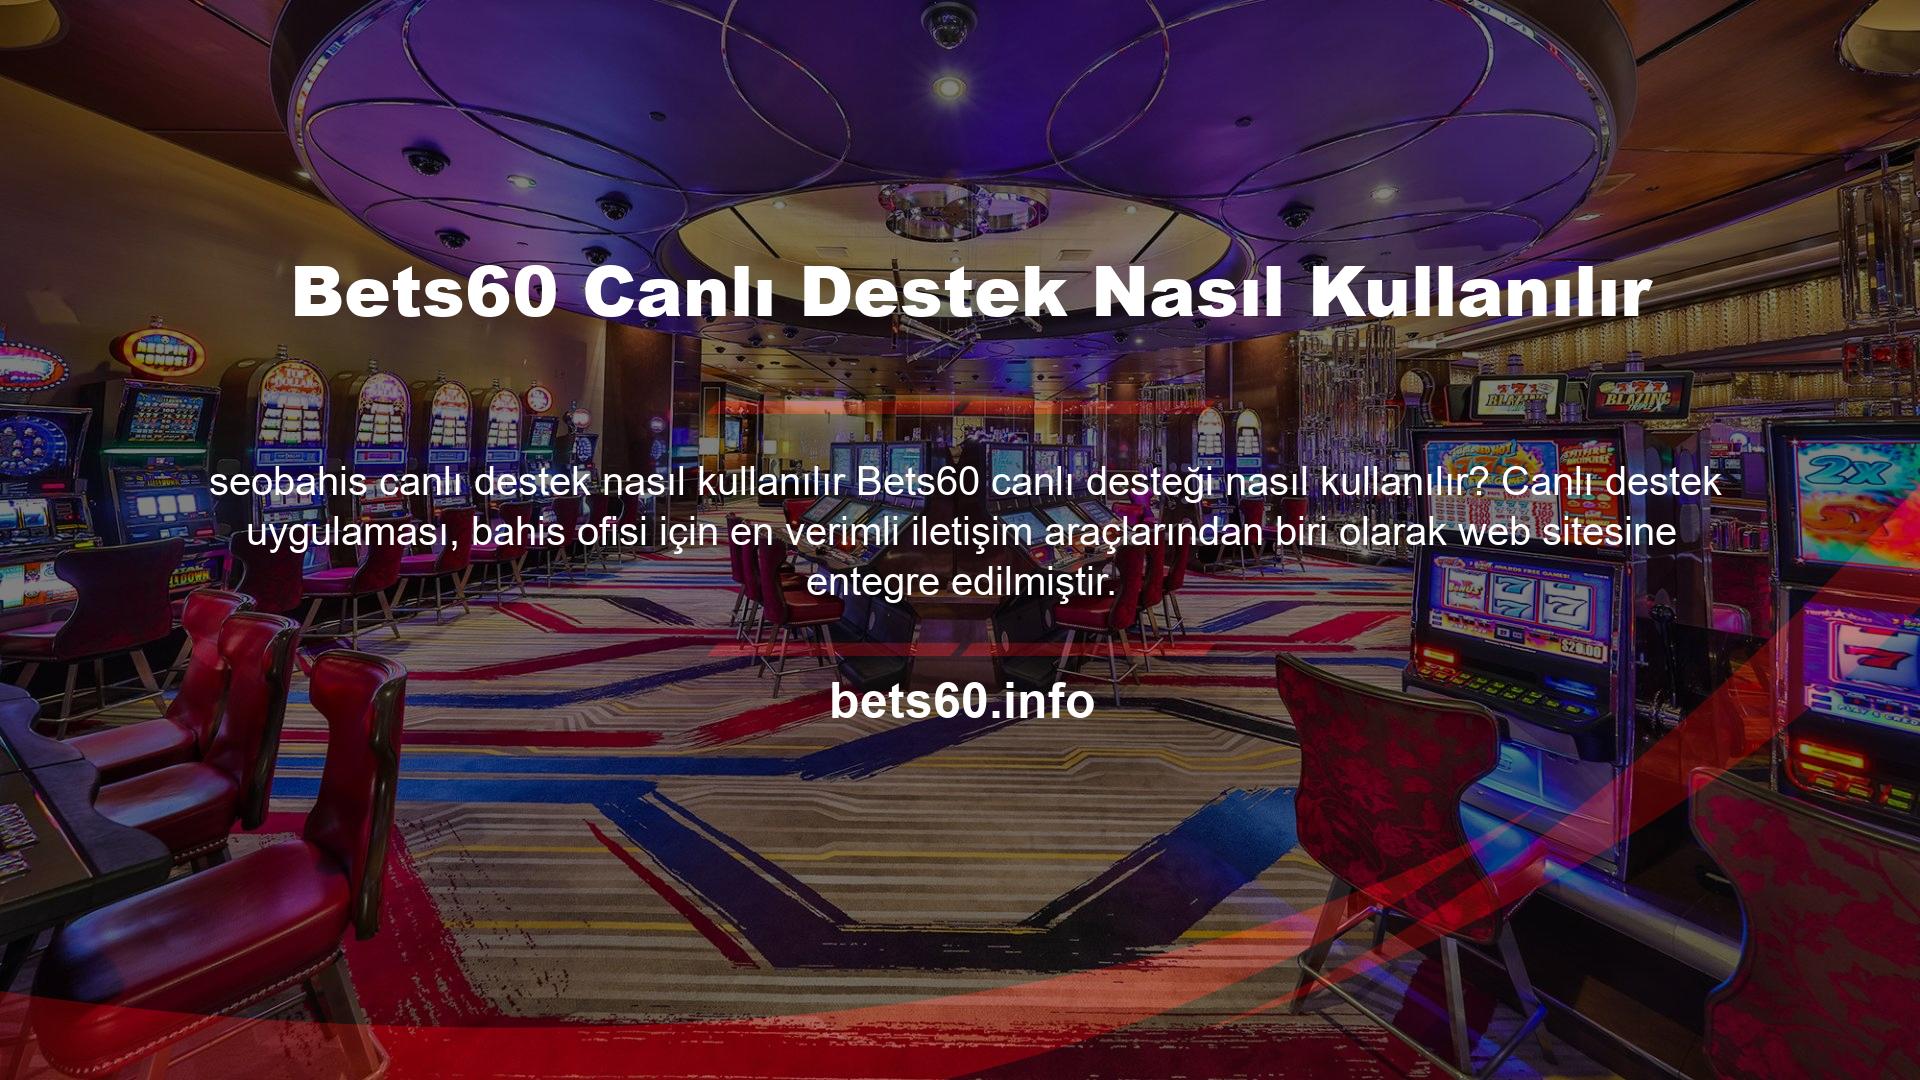 Casino Canlı Bahis web sitesi, şimdi iletişime geçilebilecek çeşitli ayrıntılar sağlar